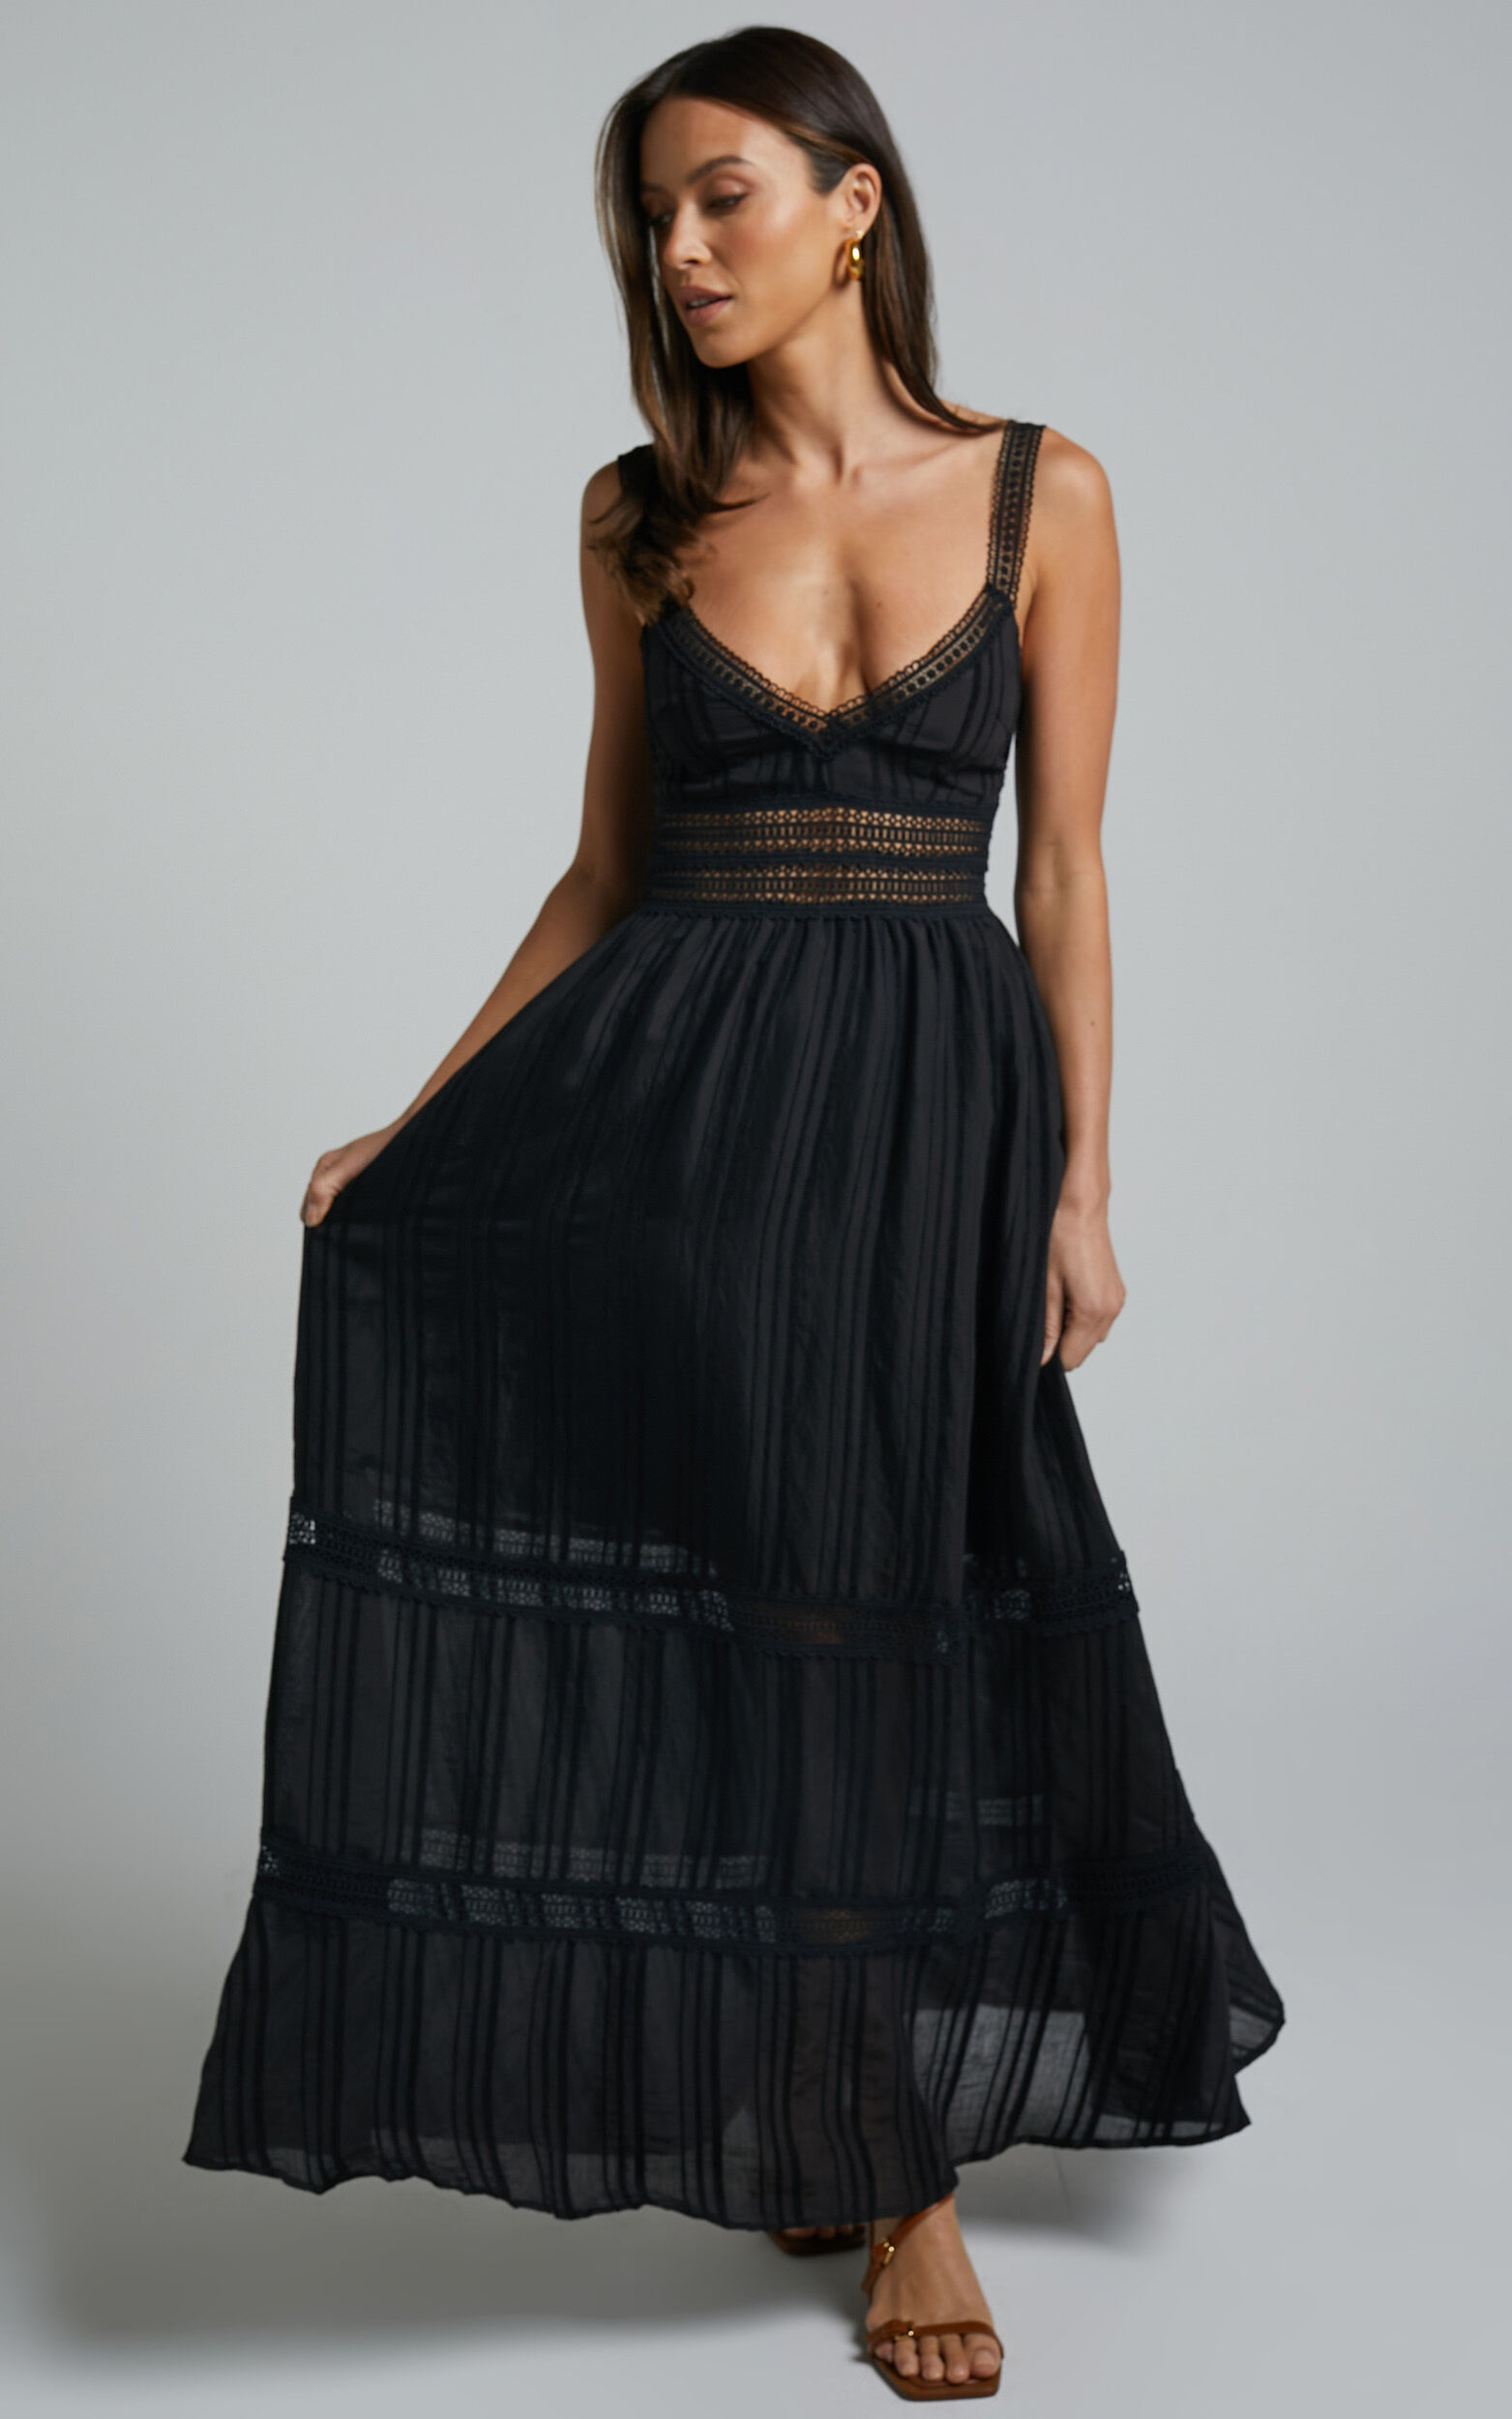 Angelique Midaxi Dress - Lace Trim Dress in Black - 06, BLK1